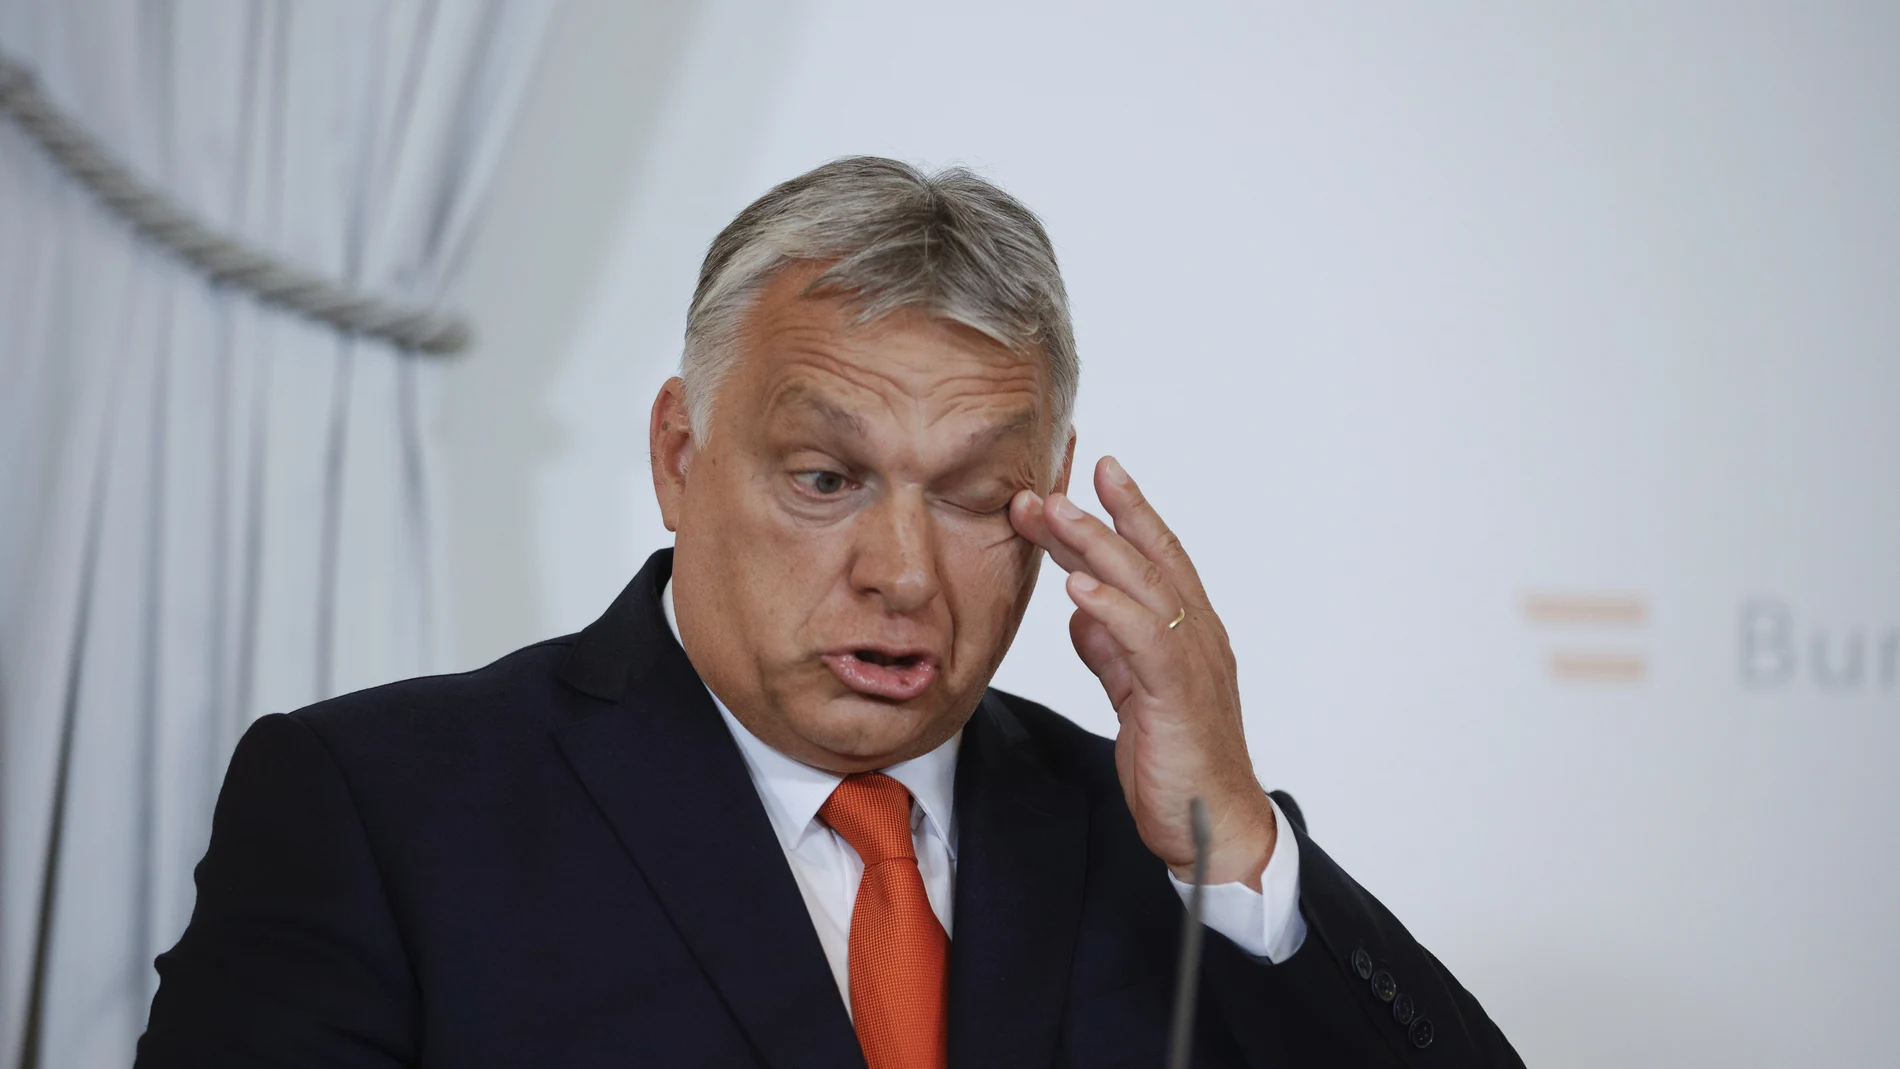 El ultranacionalista Viktor Orban prosigue su agenda iliberal en Hungría tras conseguir un quinto mandato en las elecciones de abril